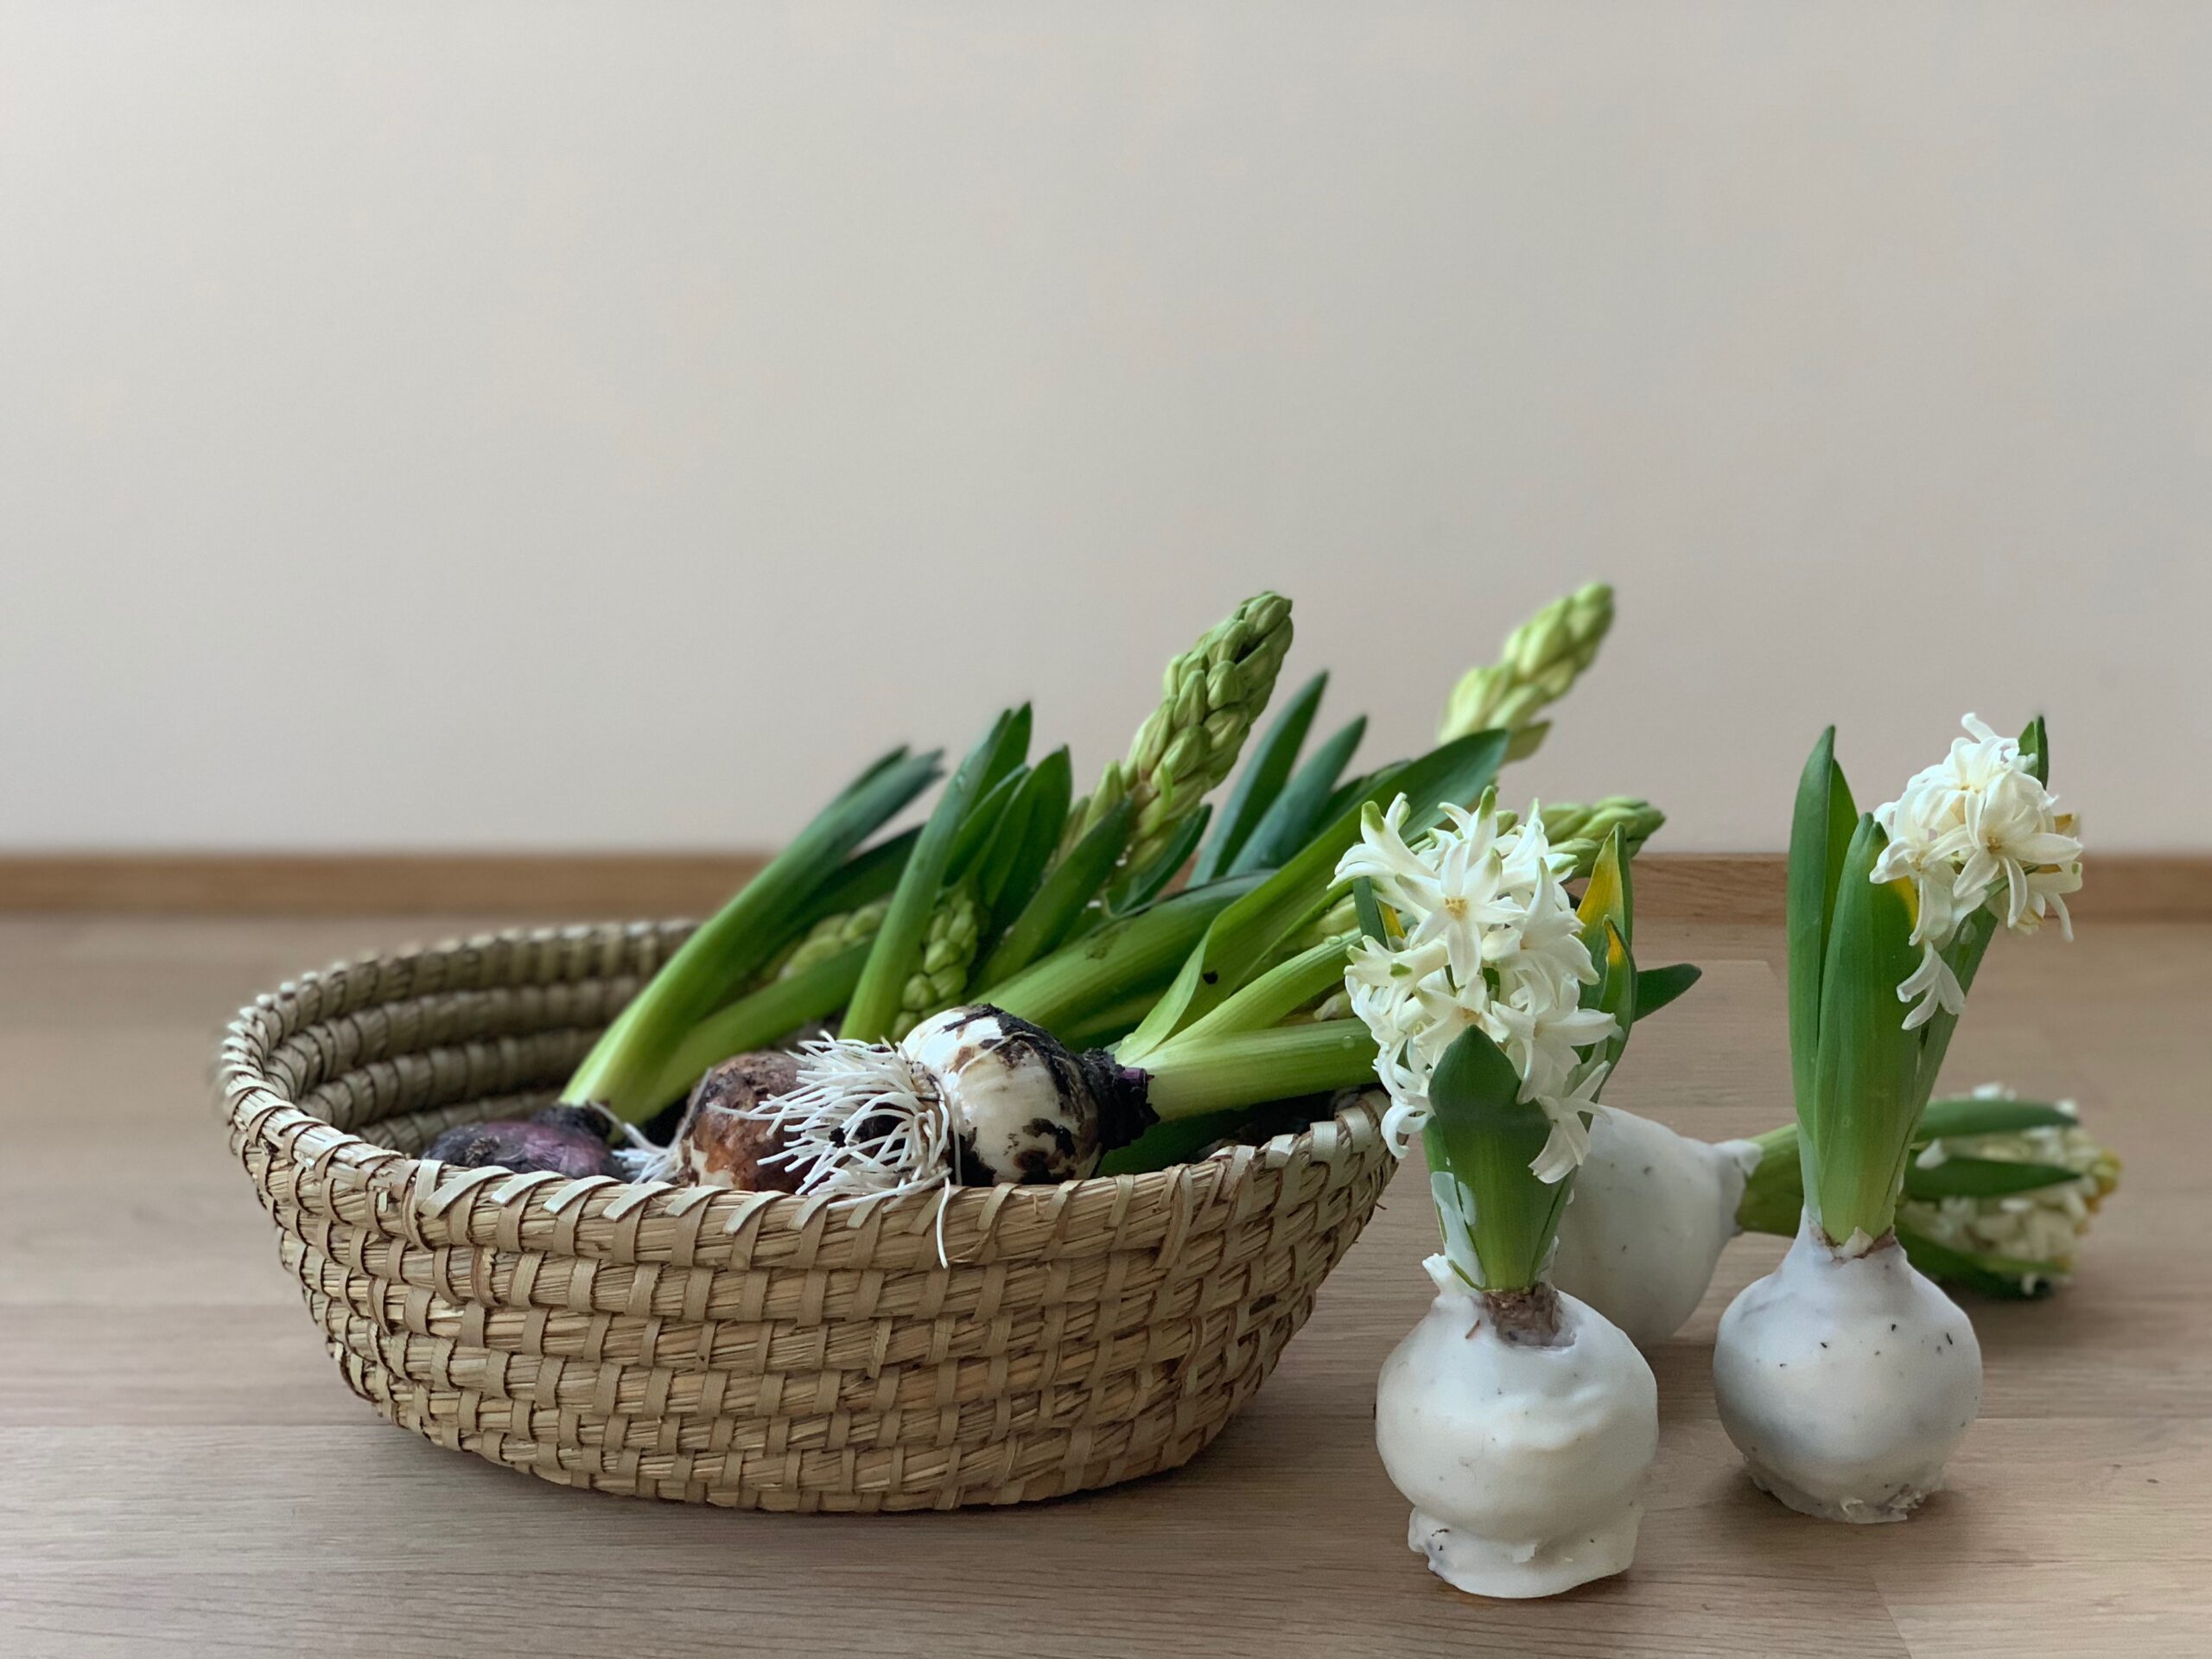 Eine Frühlingsahafte DIY Idee : Wachsblumenzwiebeln oder auch Hyazinthen in Wachs! Einfach und schön, die Anleitung findest du auf www.elfenkindberlin.de